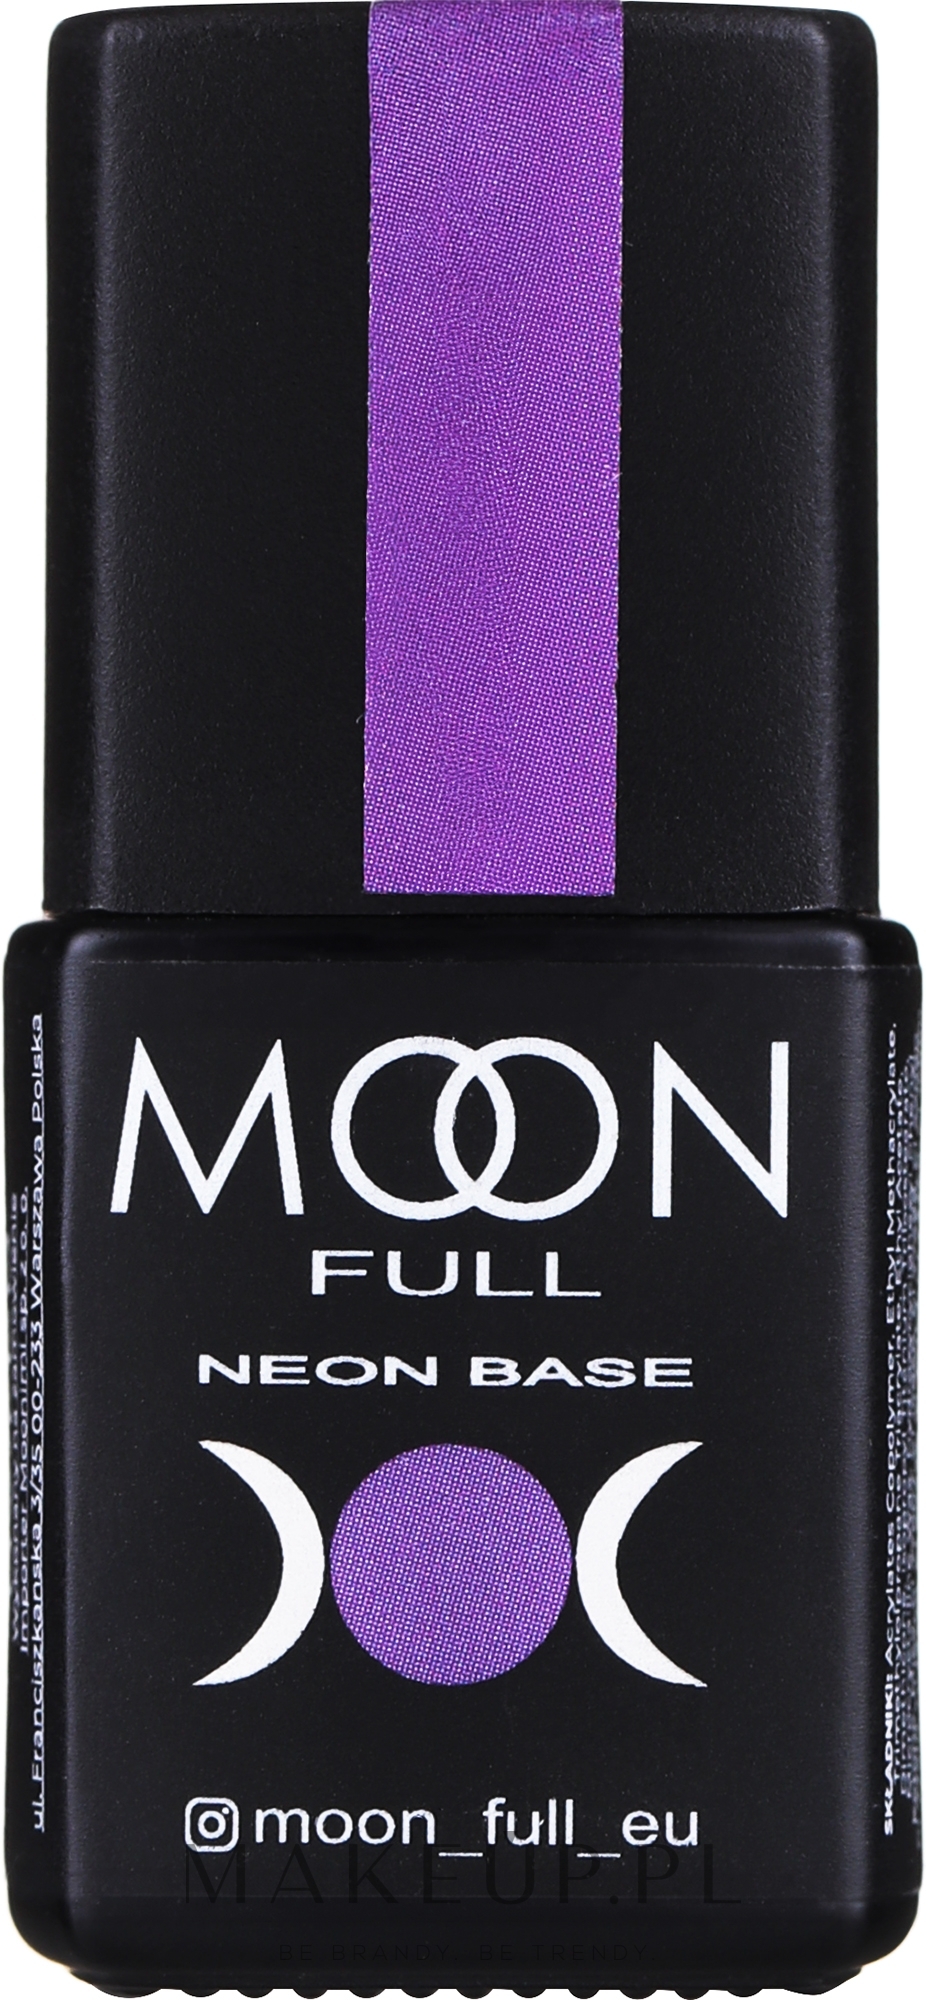 Baza kolorowa neonowa do paznokci - Moon Full Neon Base — Zdjęcie 05